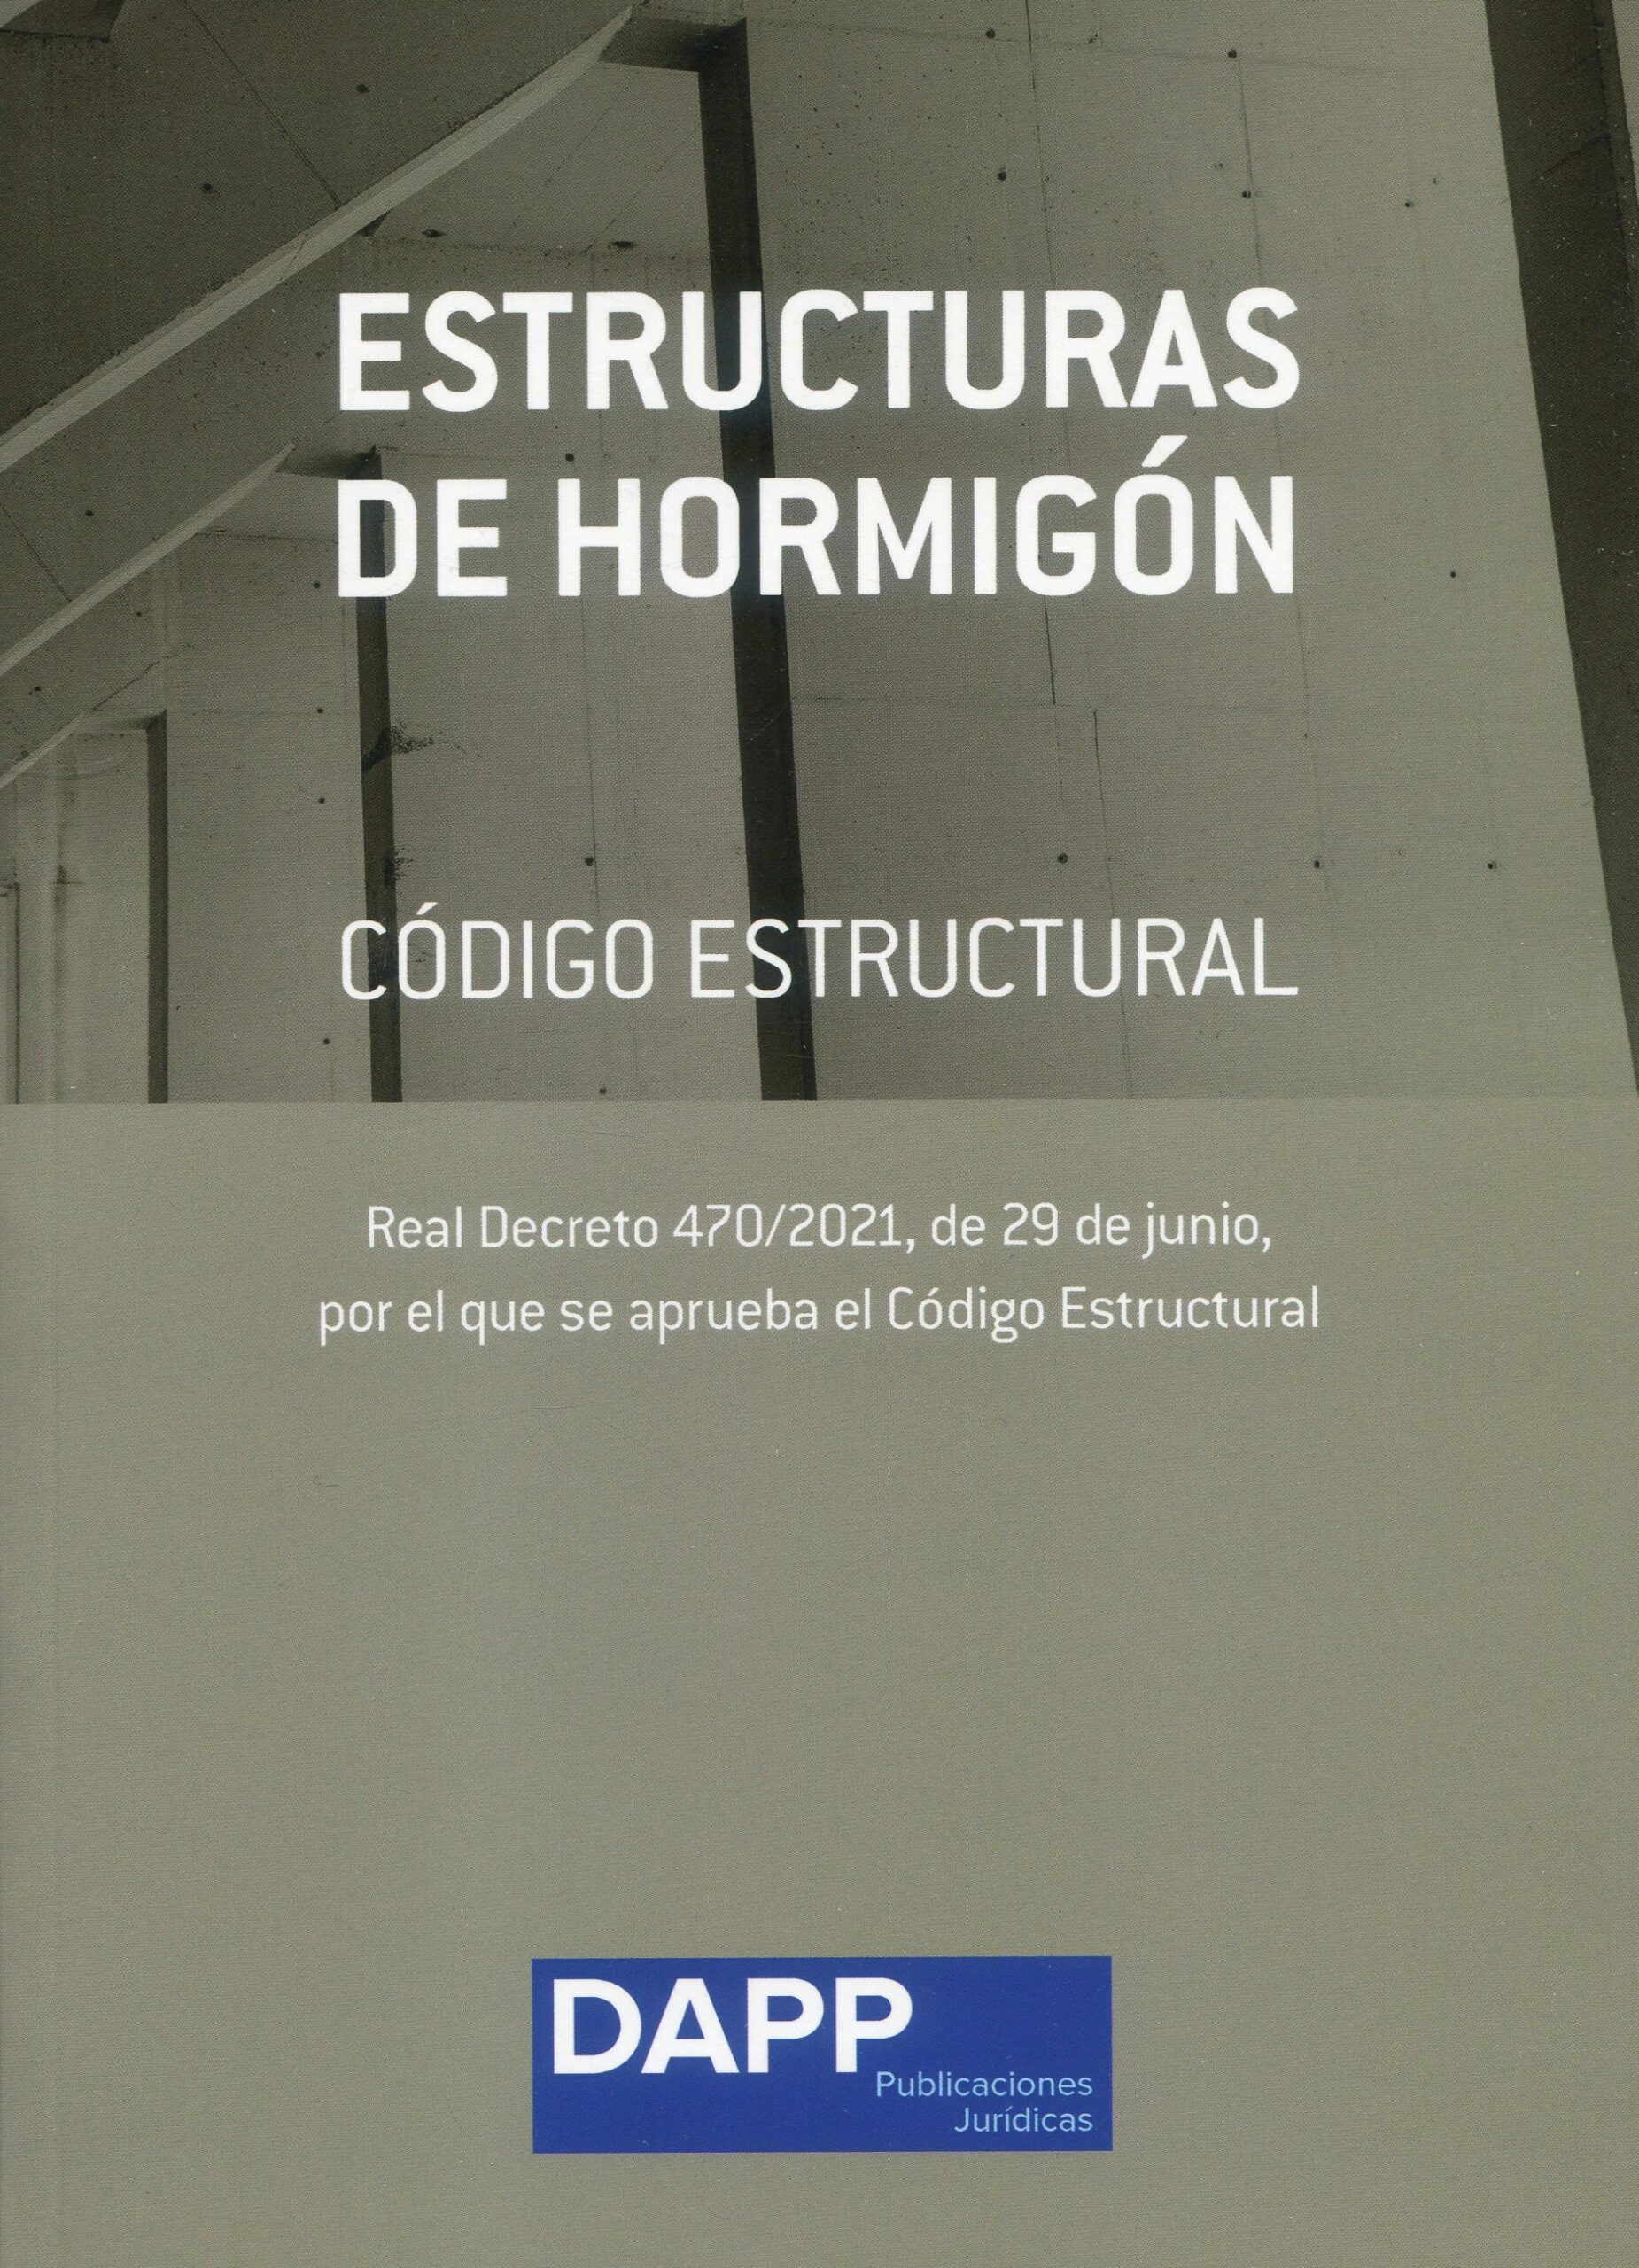 Estructuras de Hormigón Según Real Decreto 470/2021 9788409351985